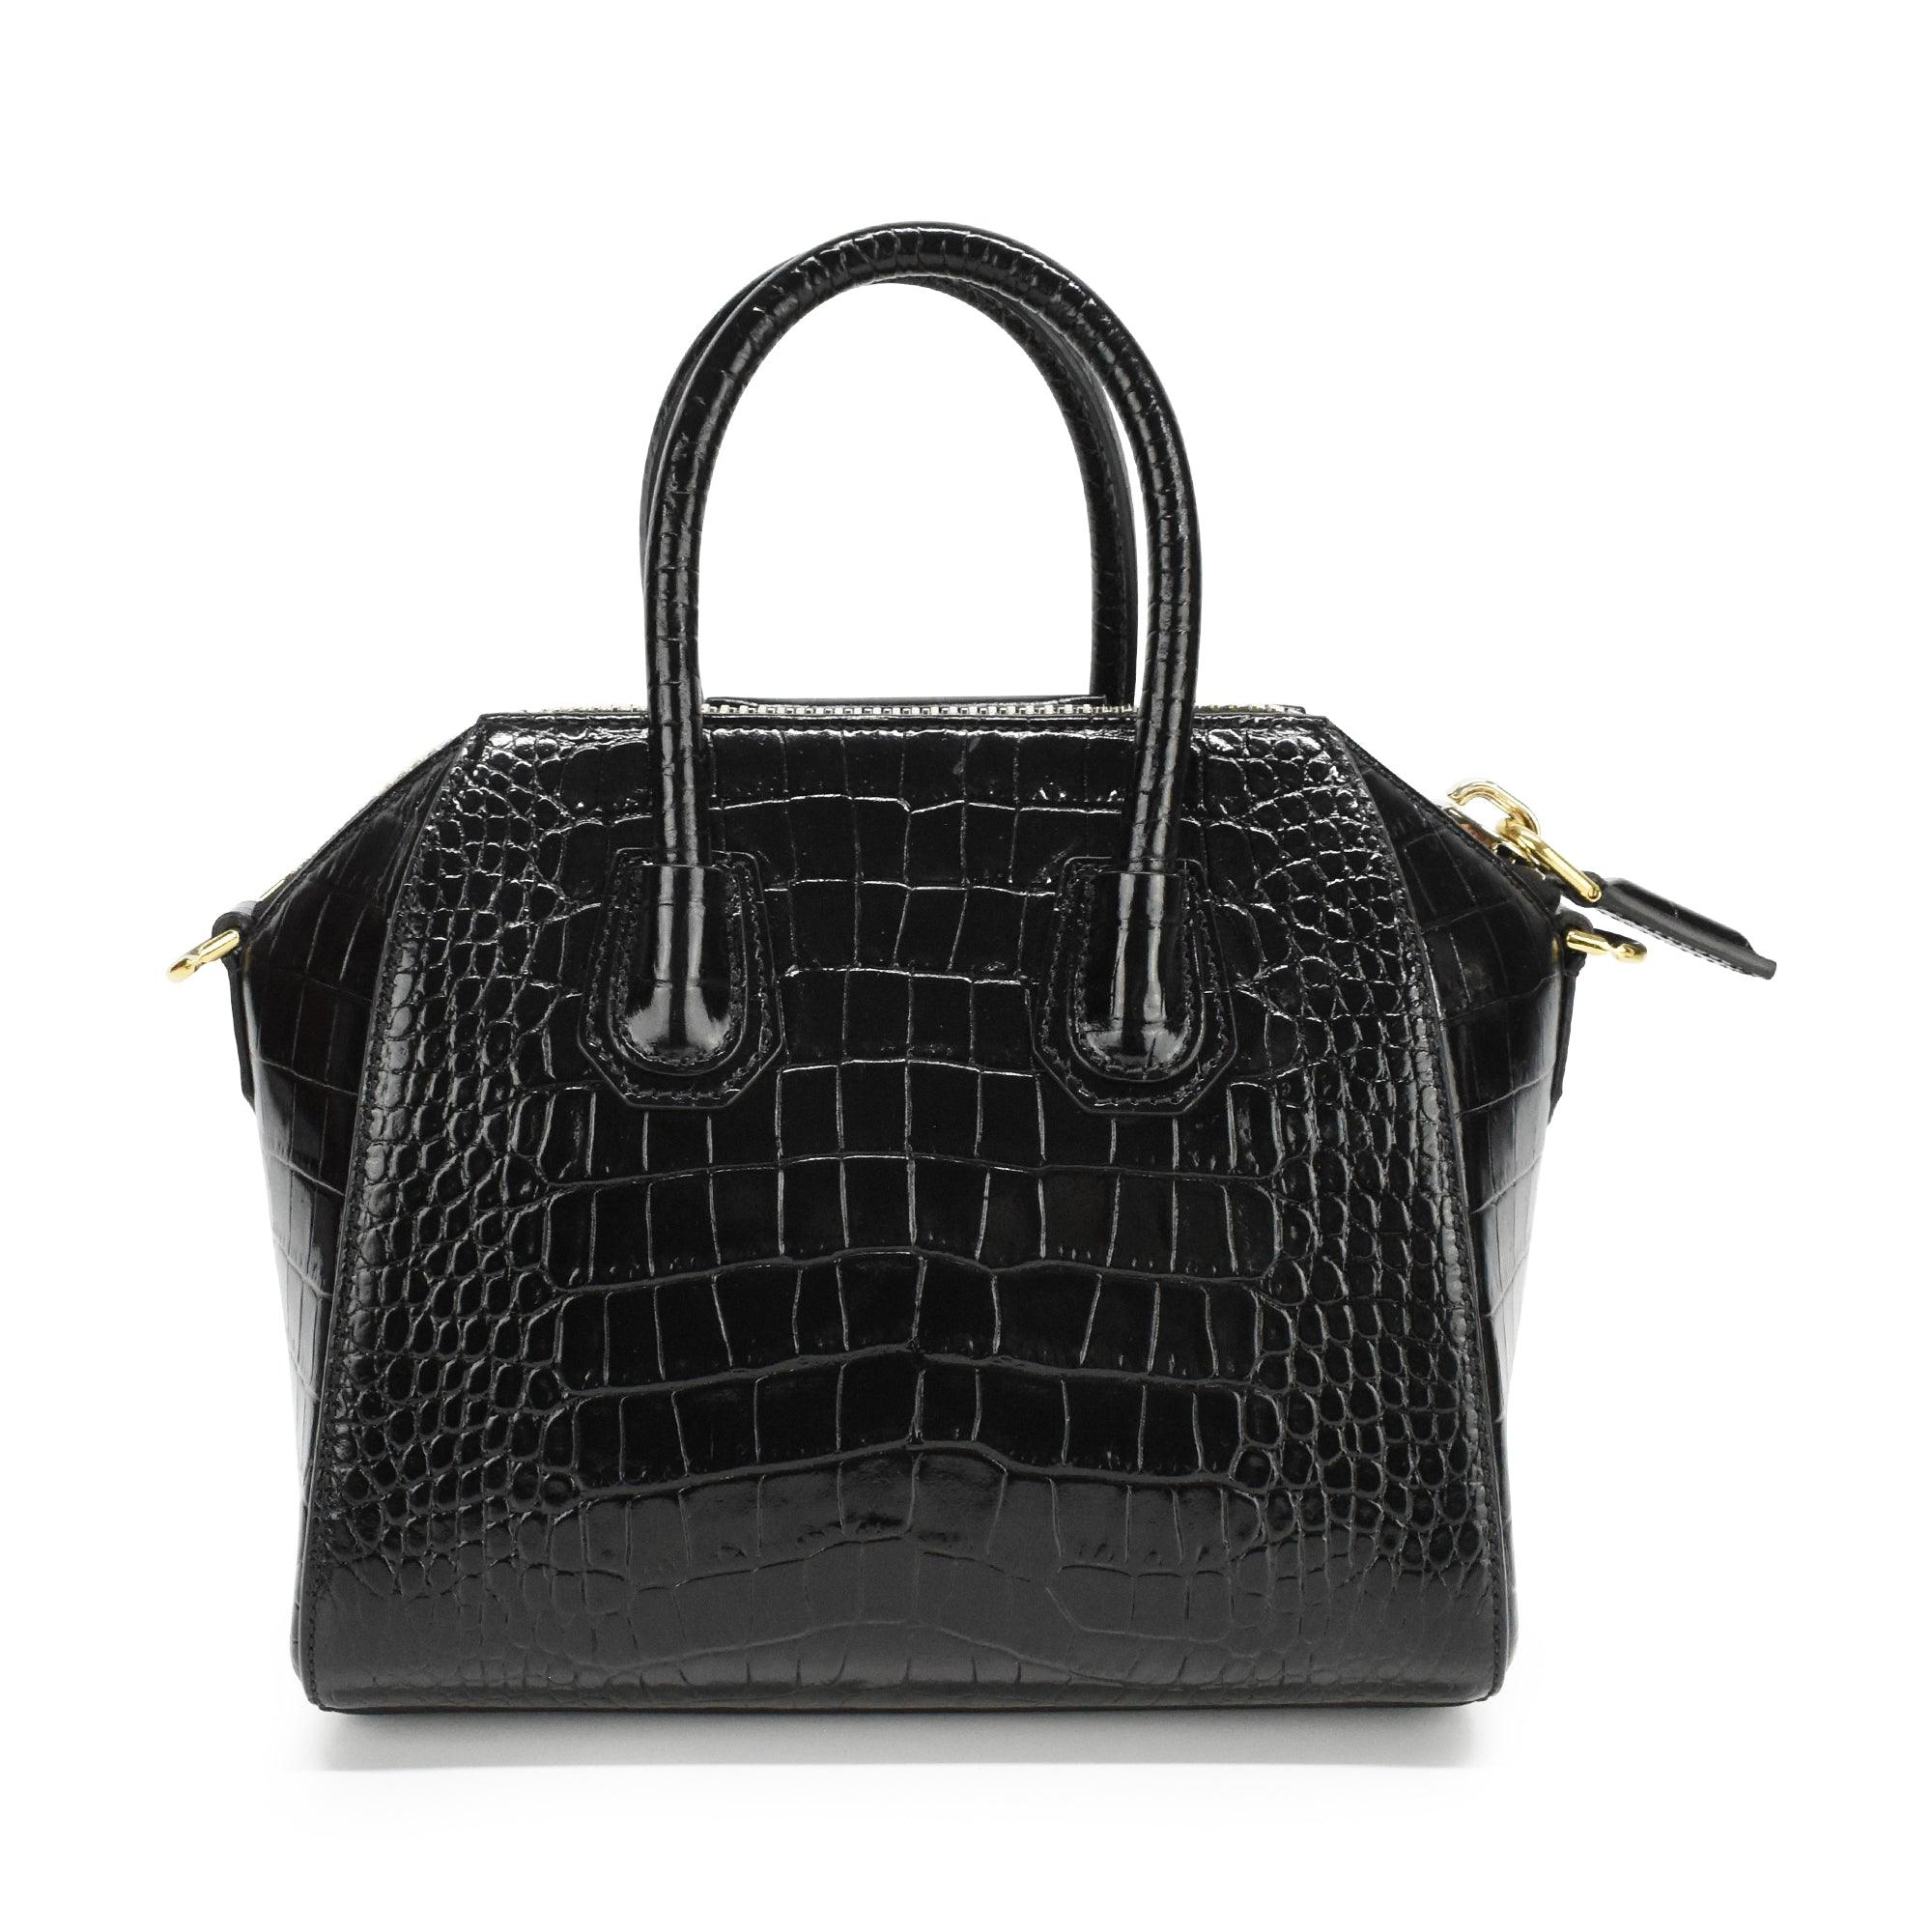 Givenchy 'Antigona Mini' Bag - Fashionably Yours